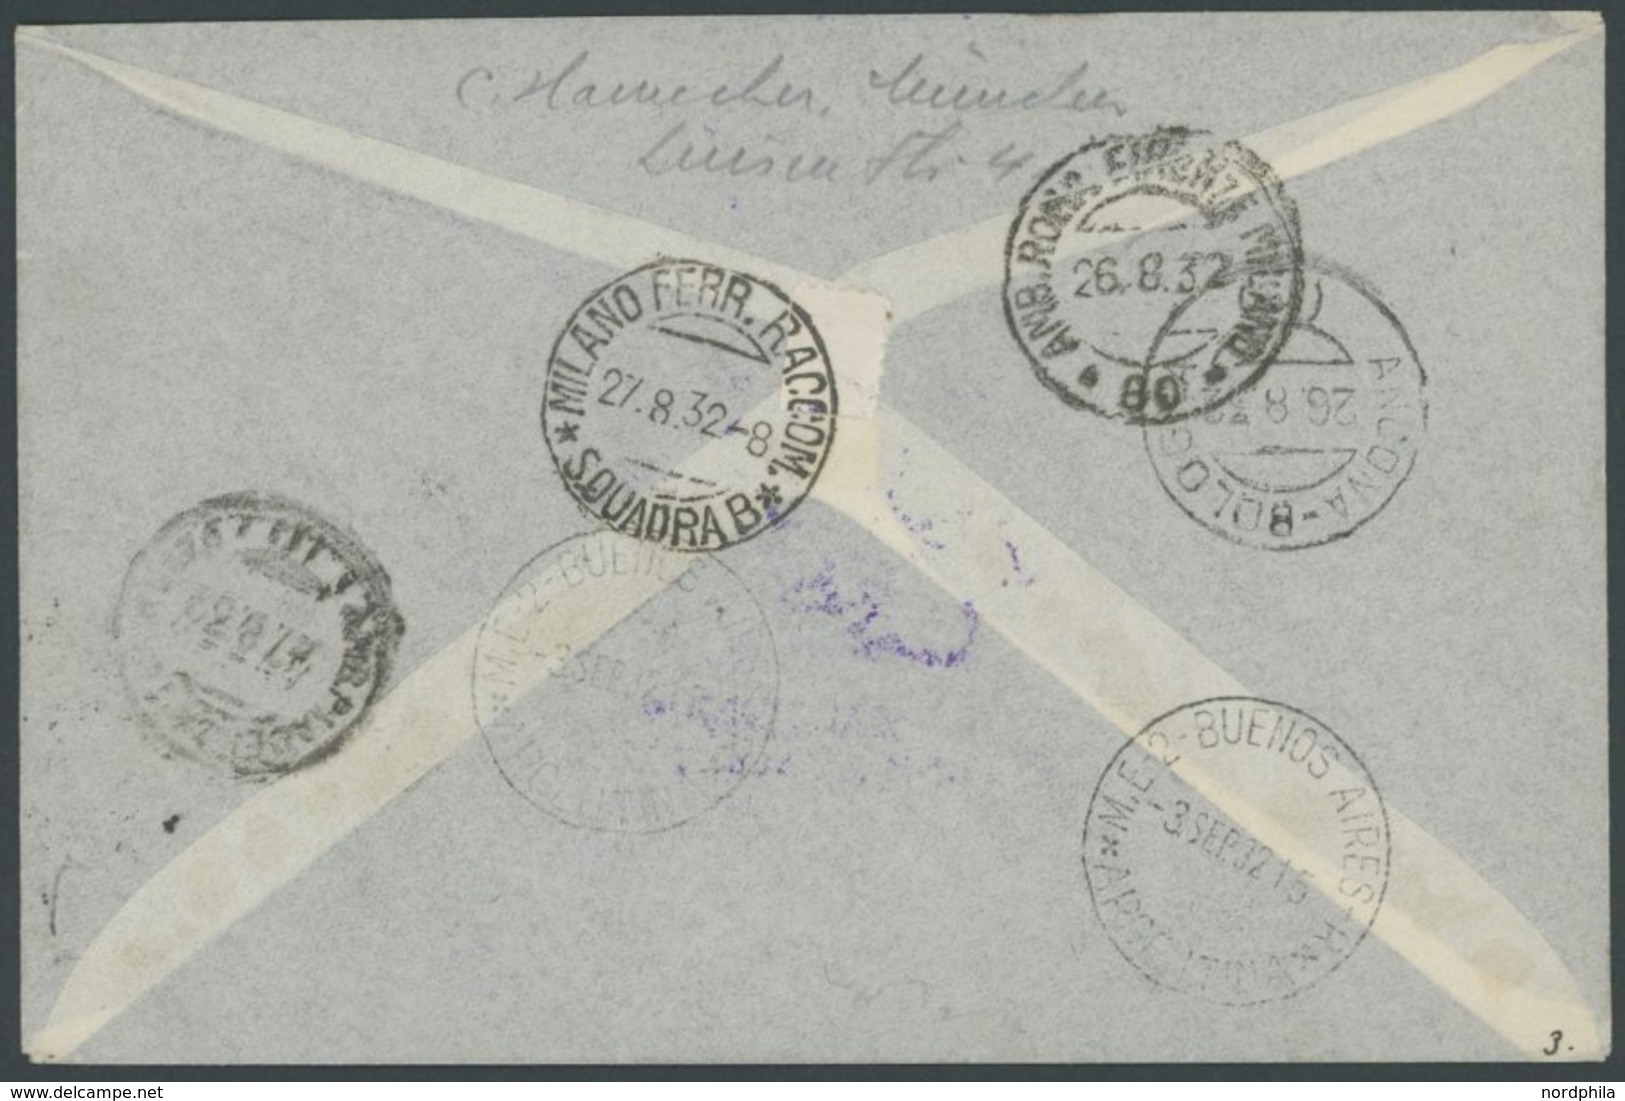 San Marino: 1932, 5. Südamerikafahrt, Einschreibbrief Nach Argentinien Mit Diversen Stempeln, U.a. Mit Rückseitigem Bahn - Luft- Und Zeppelinpost